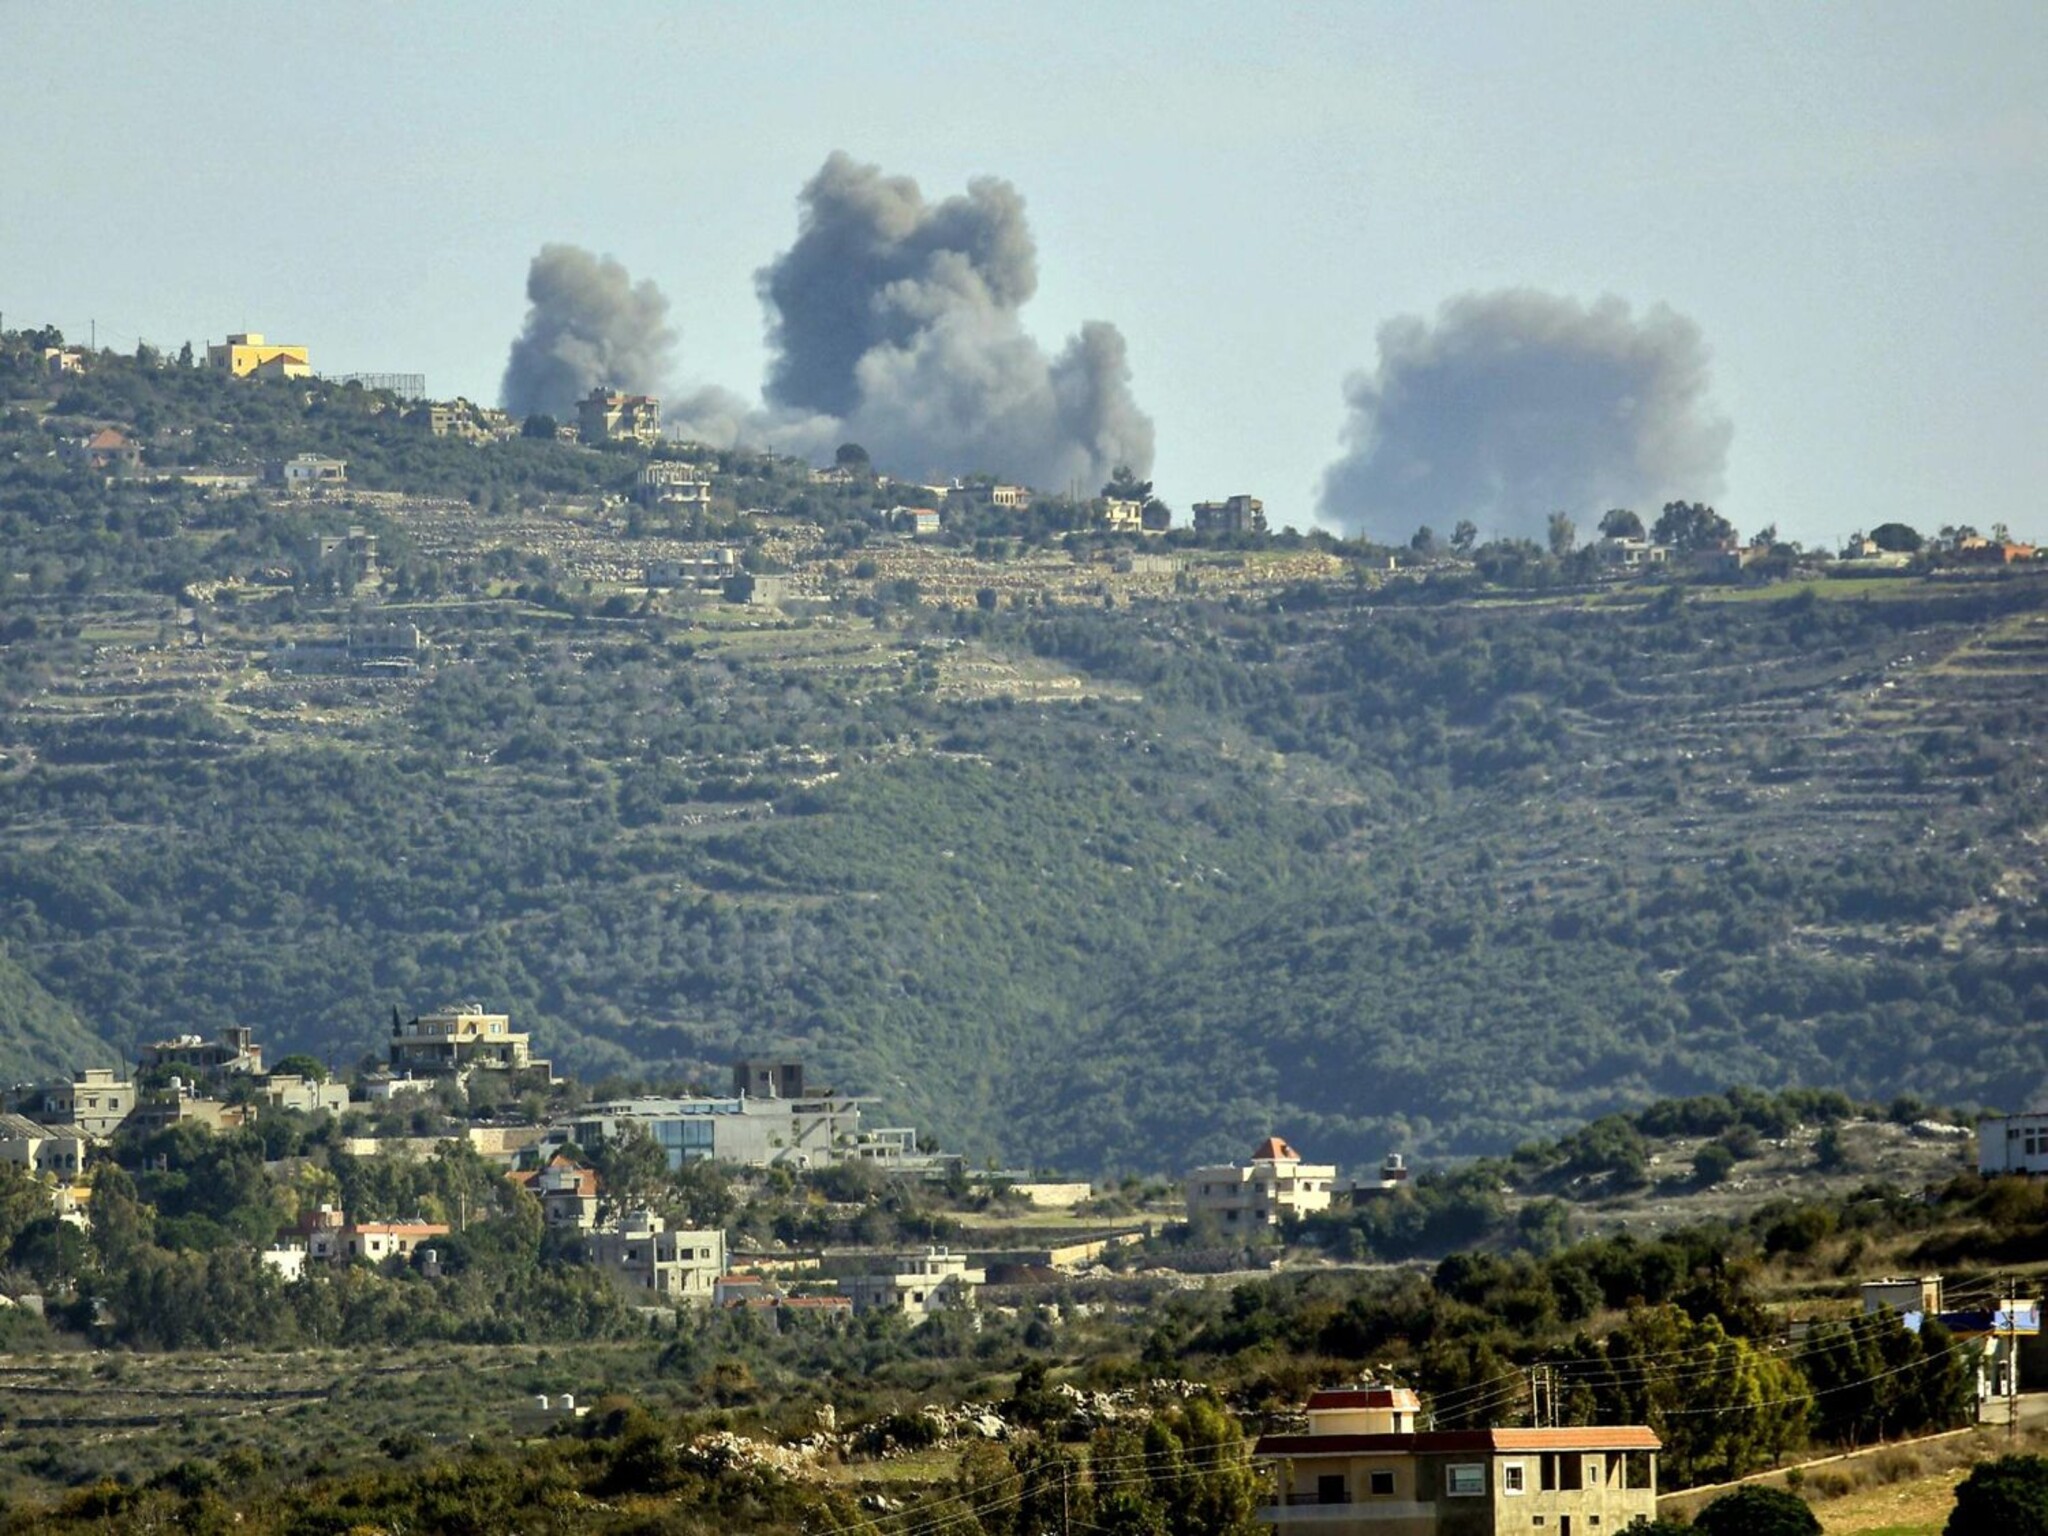 أشتعال الجبهة اللبنانية الإسرائيلية...صواريخ من لبنان تضرب موقع إسرائيلي محصن